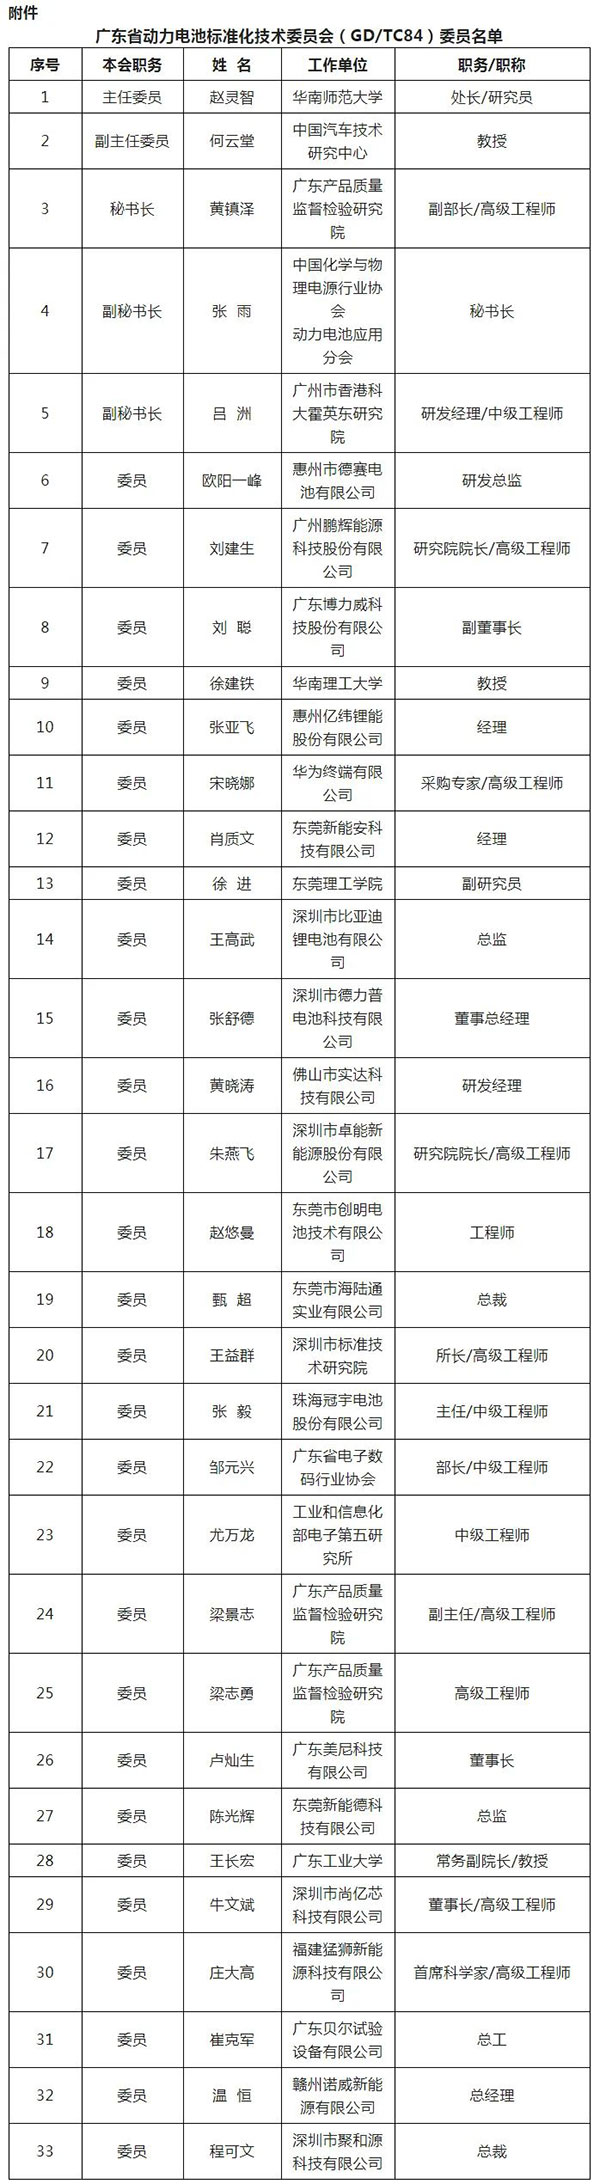 广东省动力电池标准化技术委员会名单公布